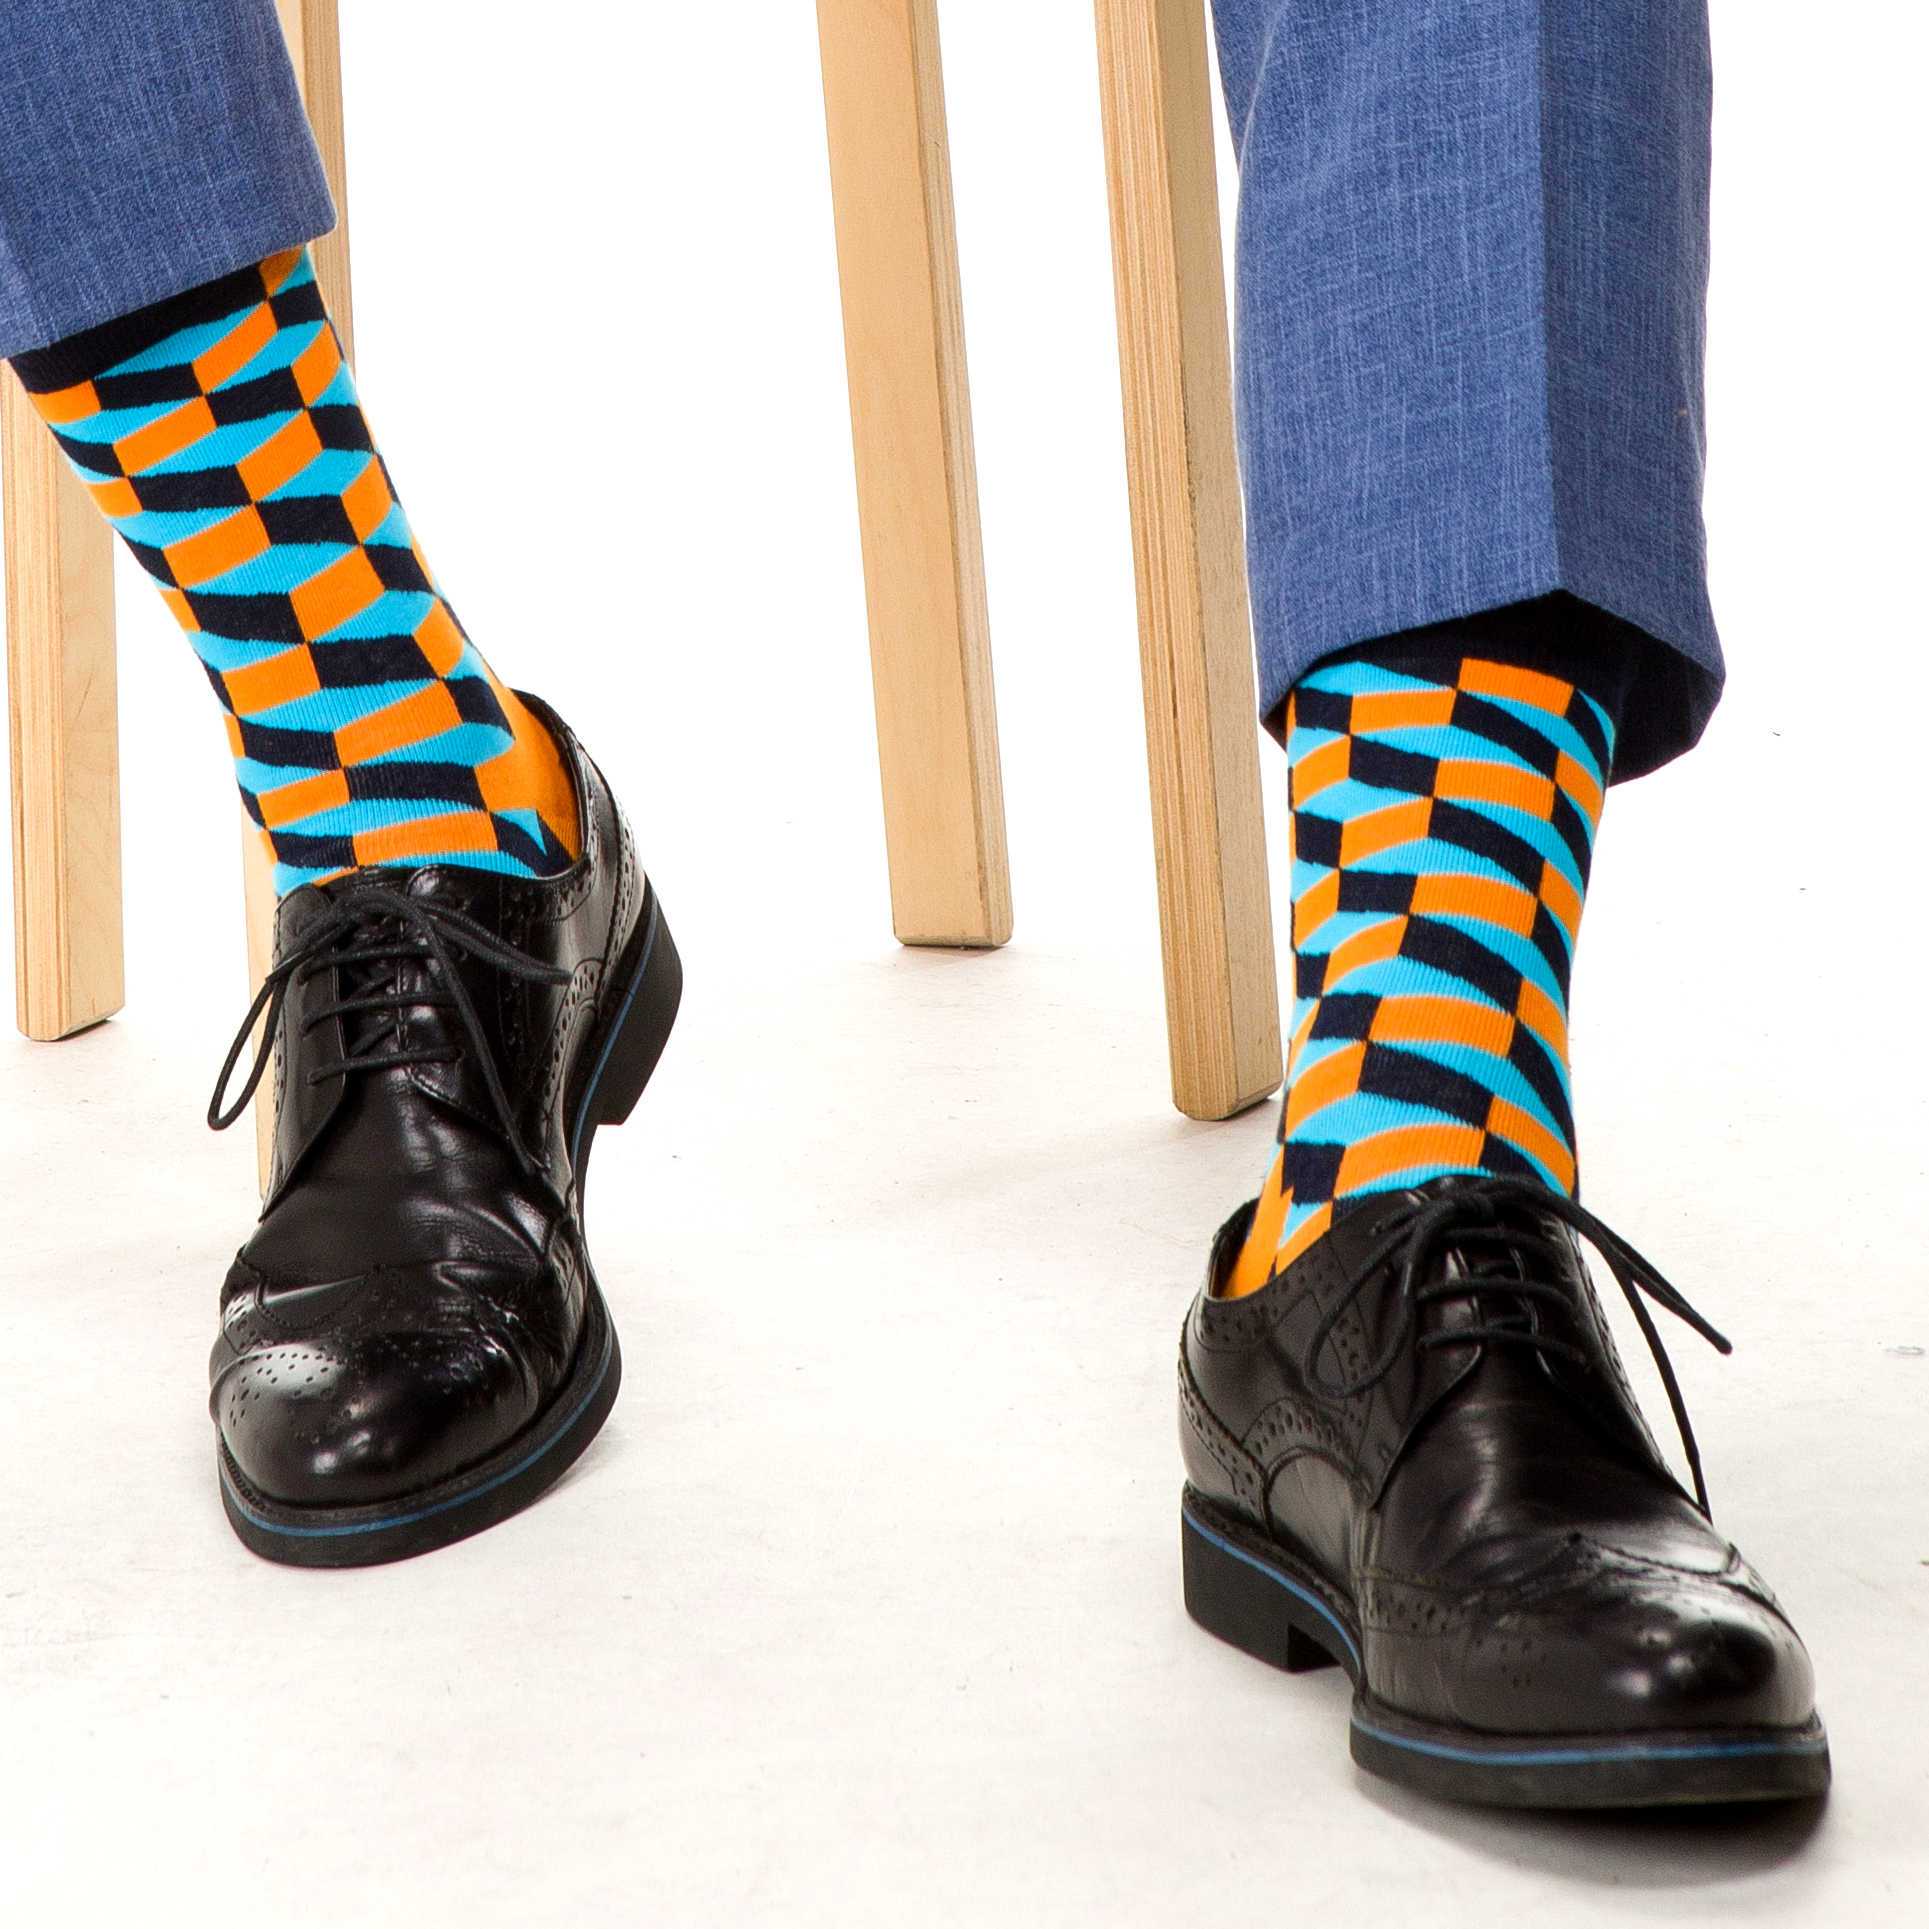 Мужские носки какие лучше для повседневной. Модные мужские носки. Цветные носки. Яркие носки. Яркие носки мужские.